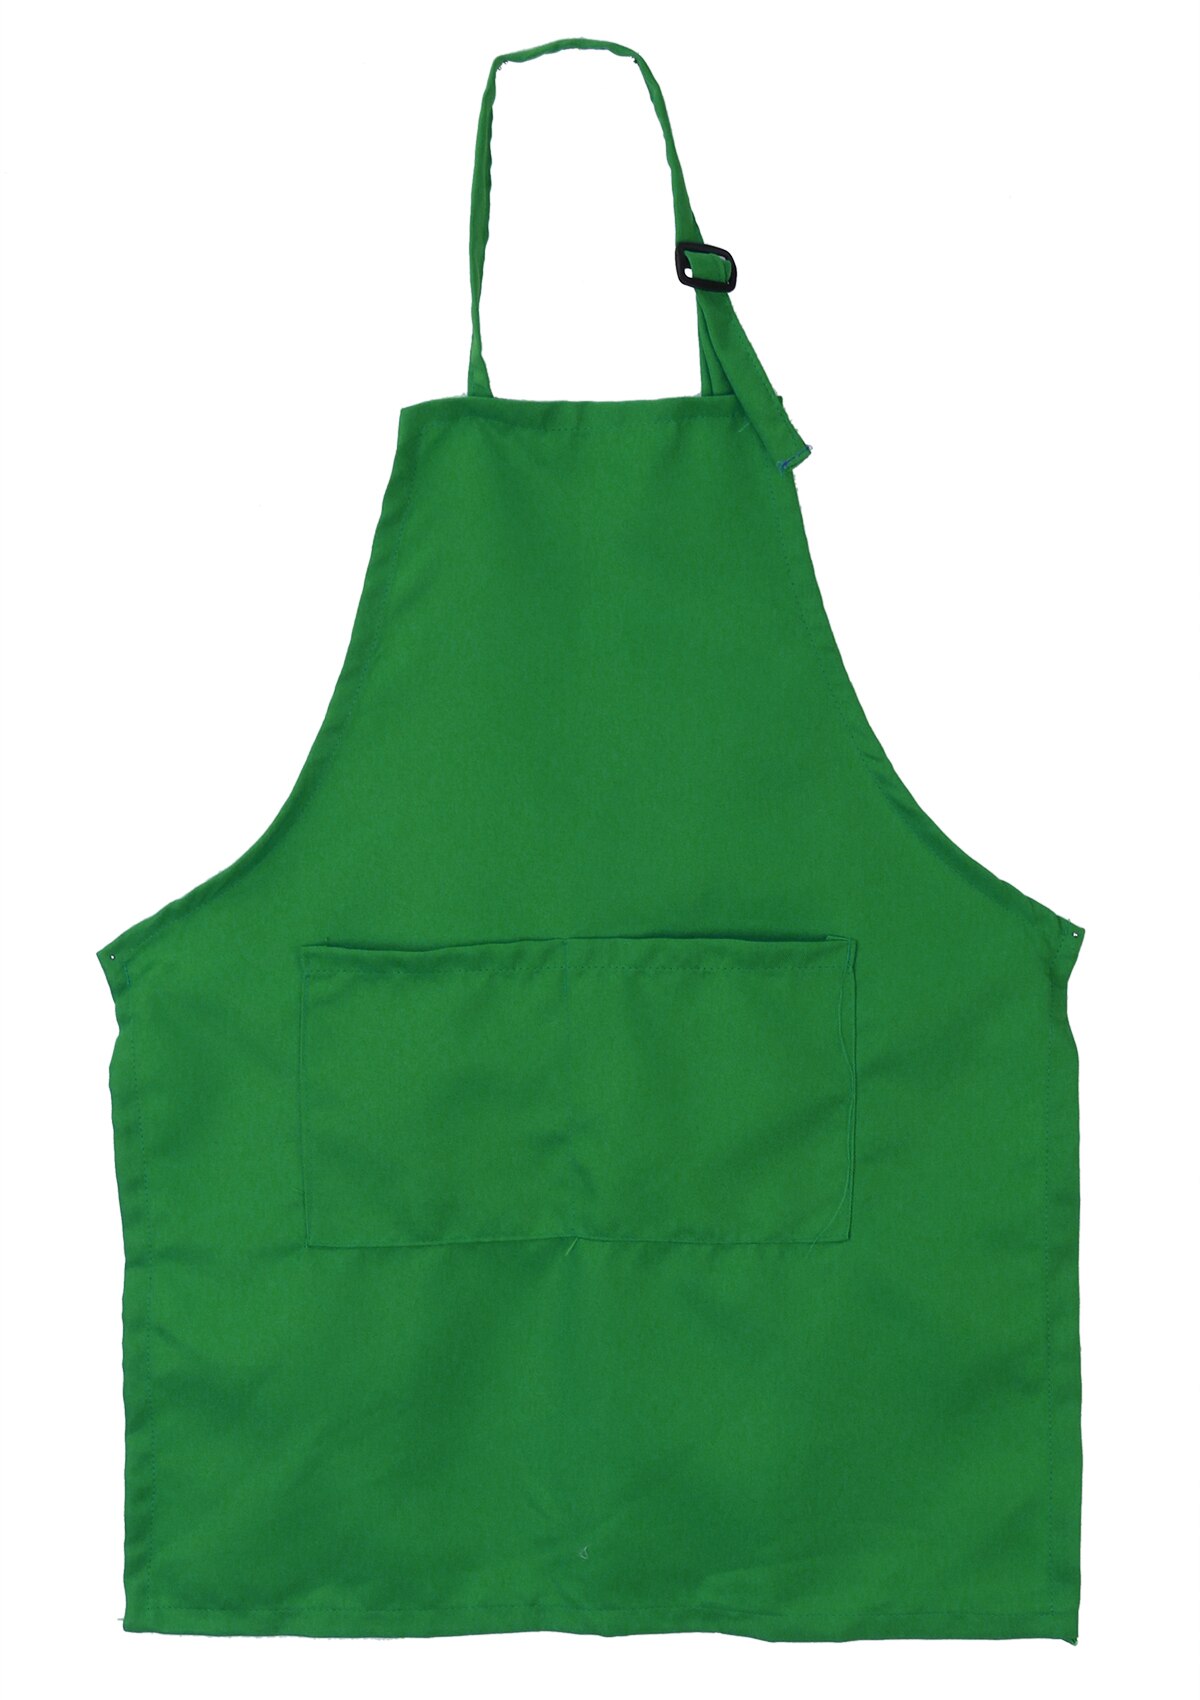 Børn børn fast almindeligt forklæde køkken madlavning bagning maleri madlavning kunst bib forklæde: Grøn